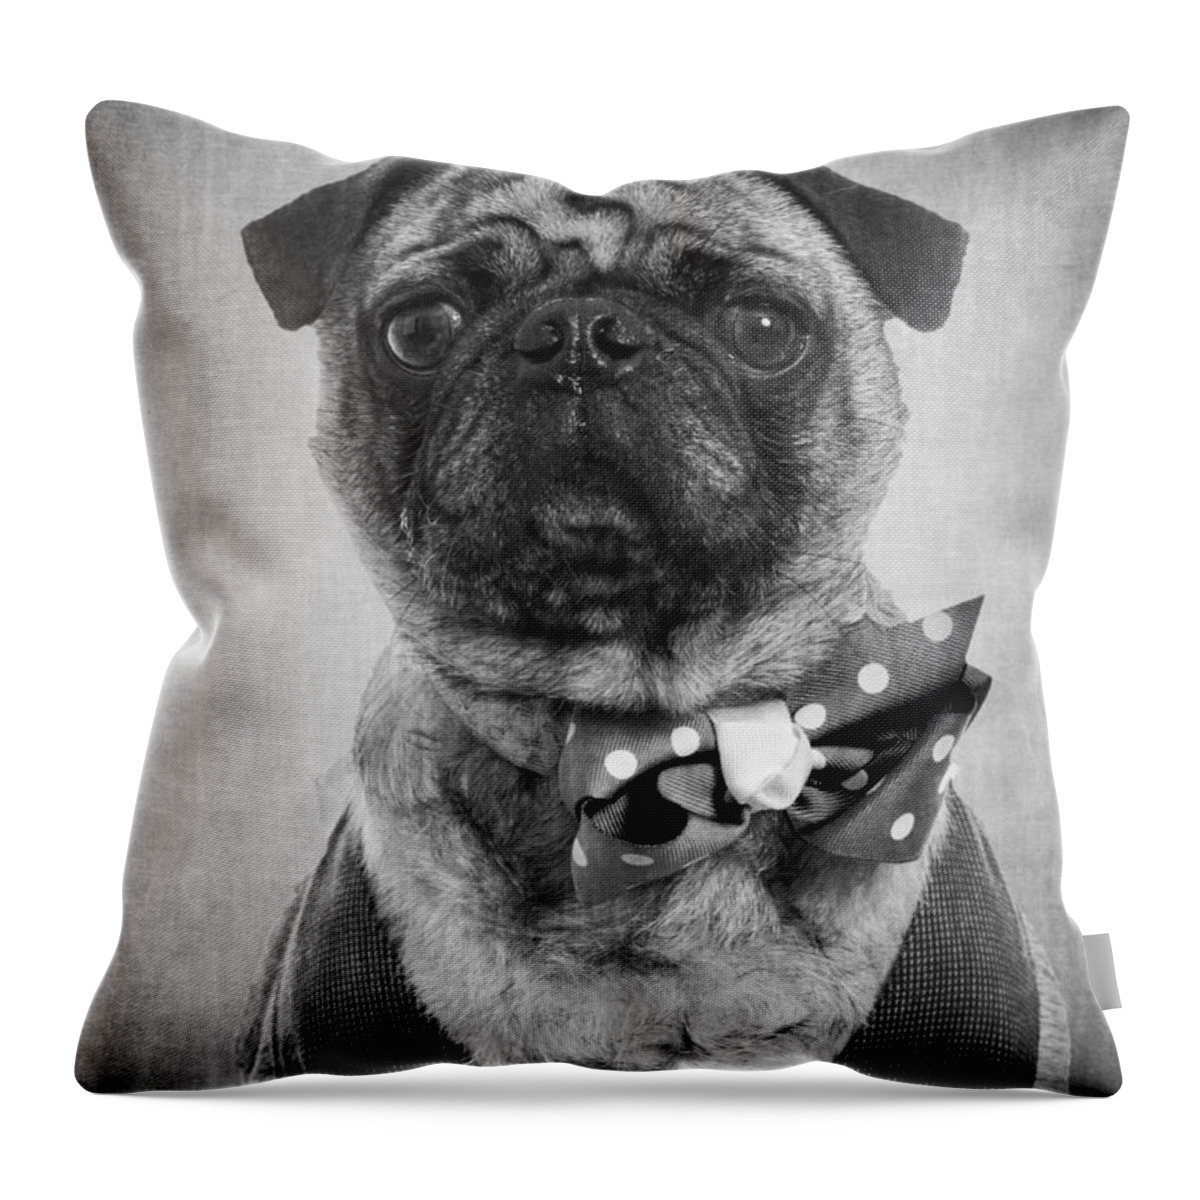 Dapper Throw Pillow featuring the photograph Dapper Dog by Edward Fielding